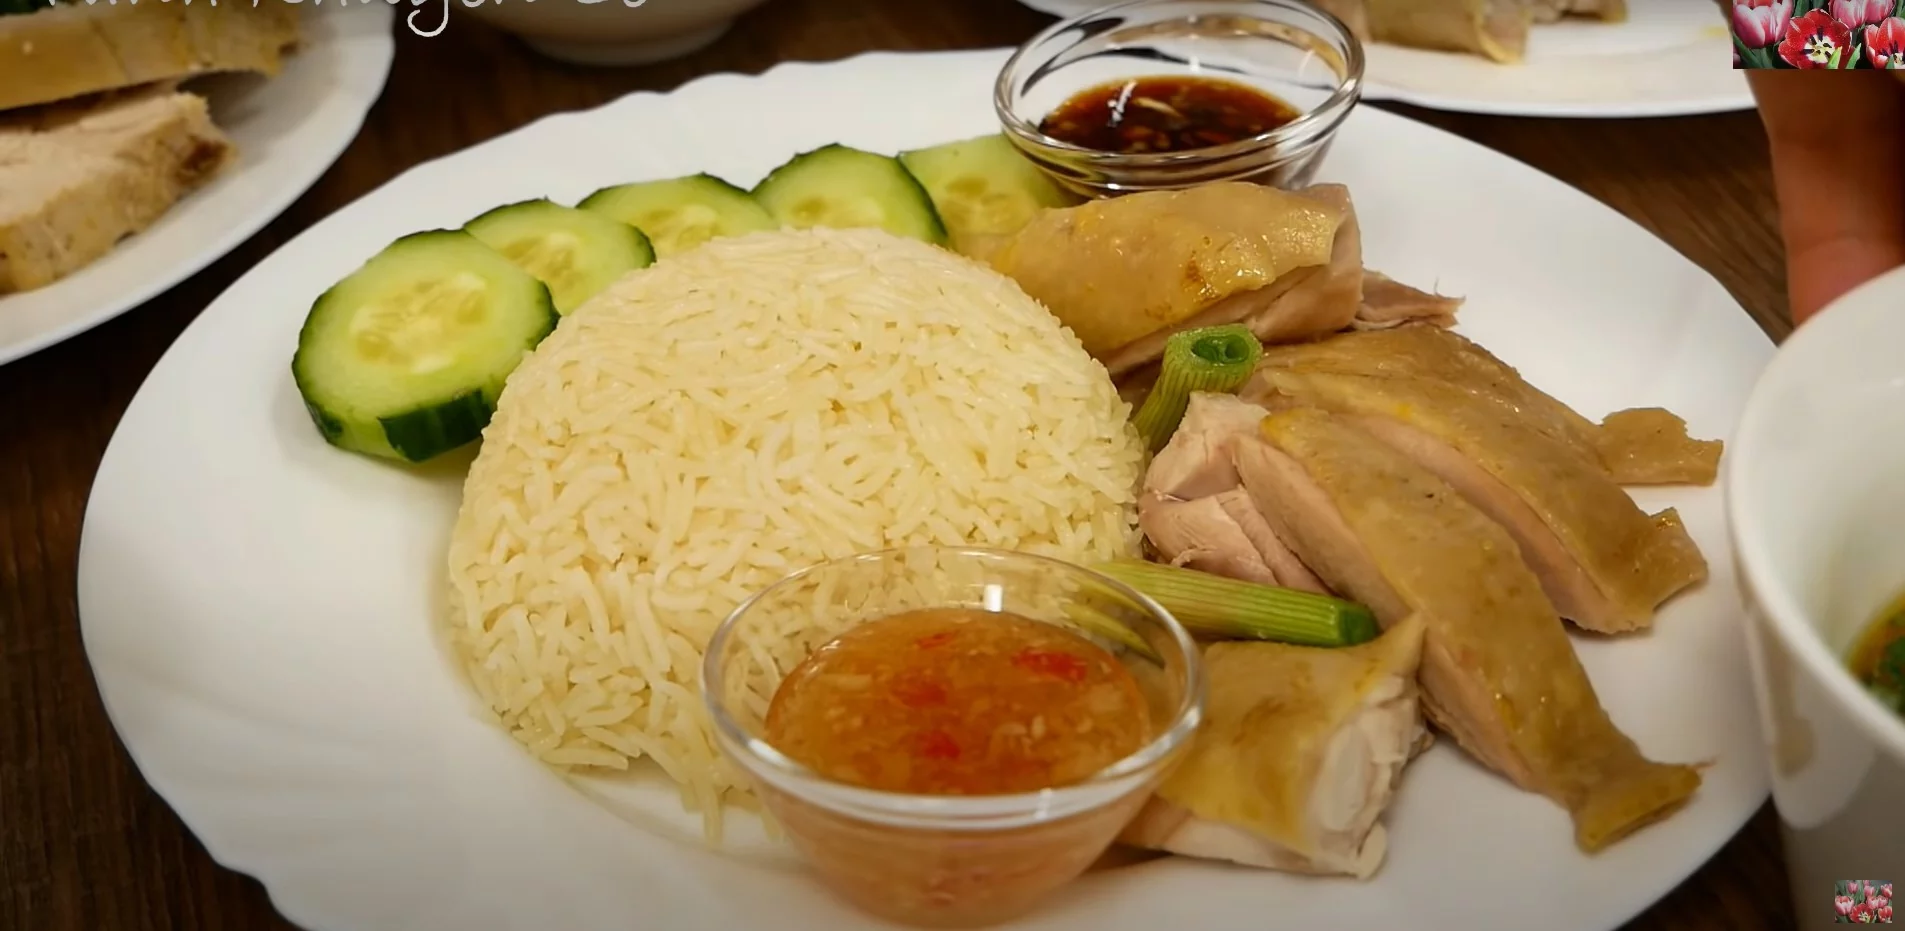 Cơm gà Hải Nam - Vanh Khuyen